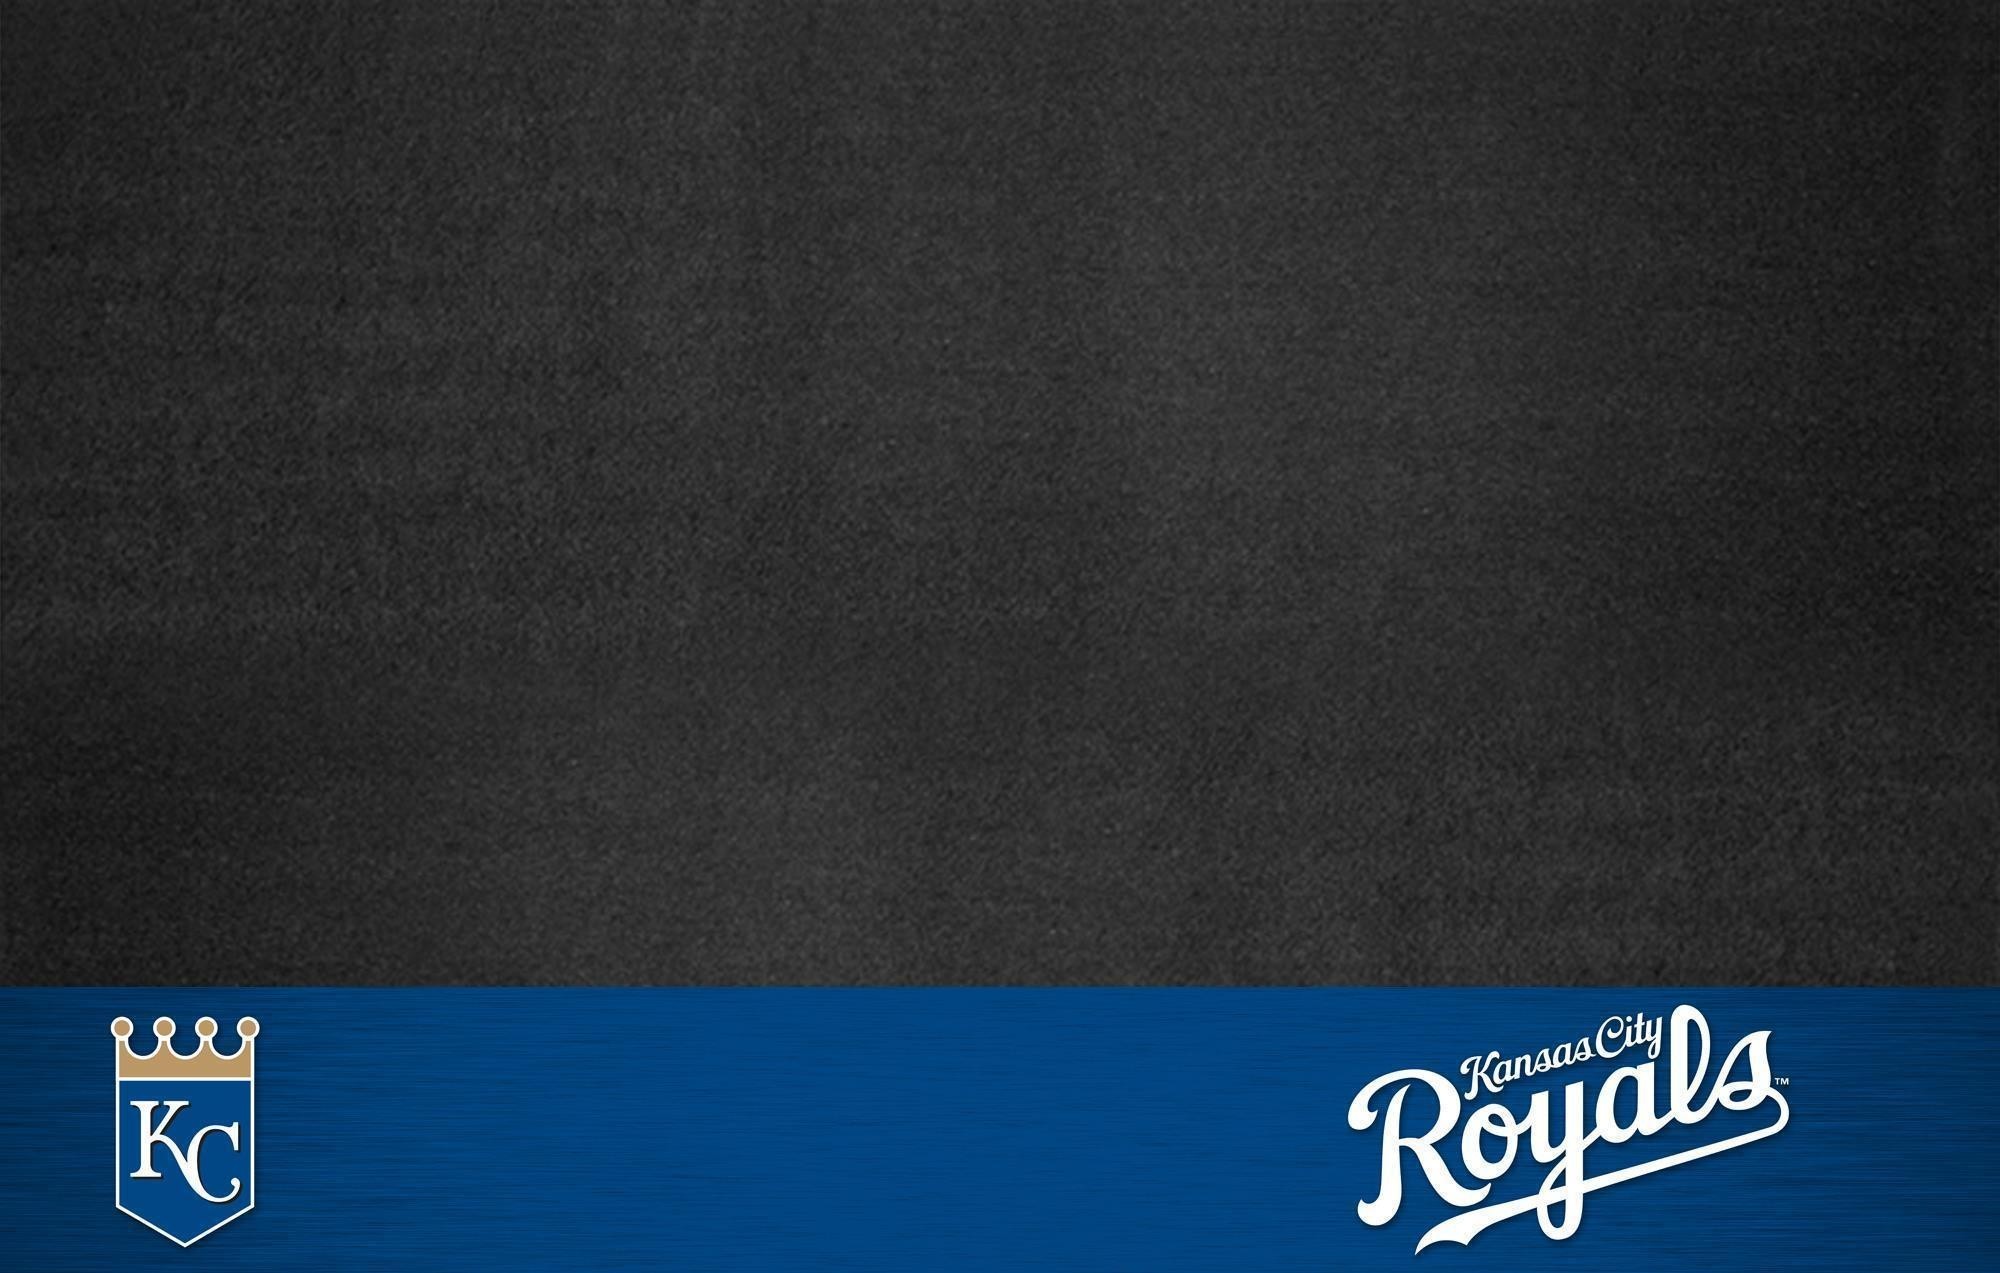 2000x1273 Kansas City Royals Wallpapers Hd Awesome Kansas City Royals Wallpapers  Wallpaper Cave Of Kansas City Royals